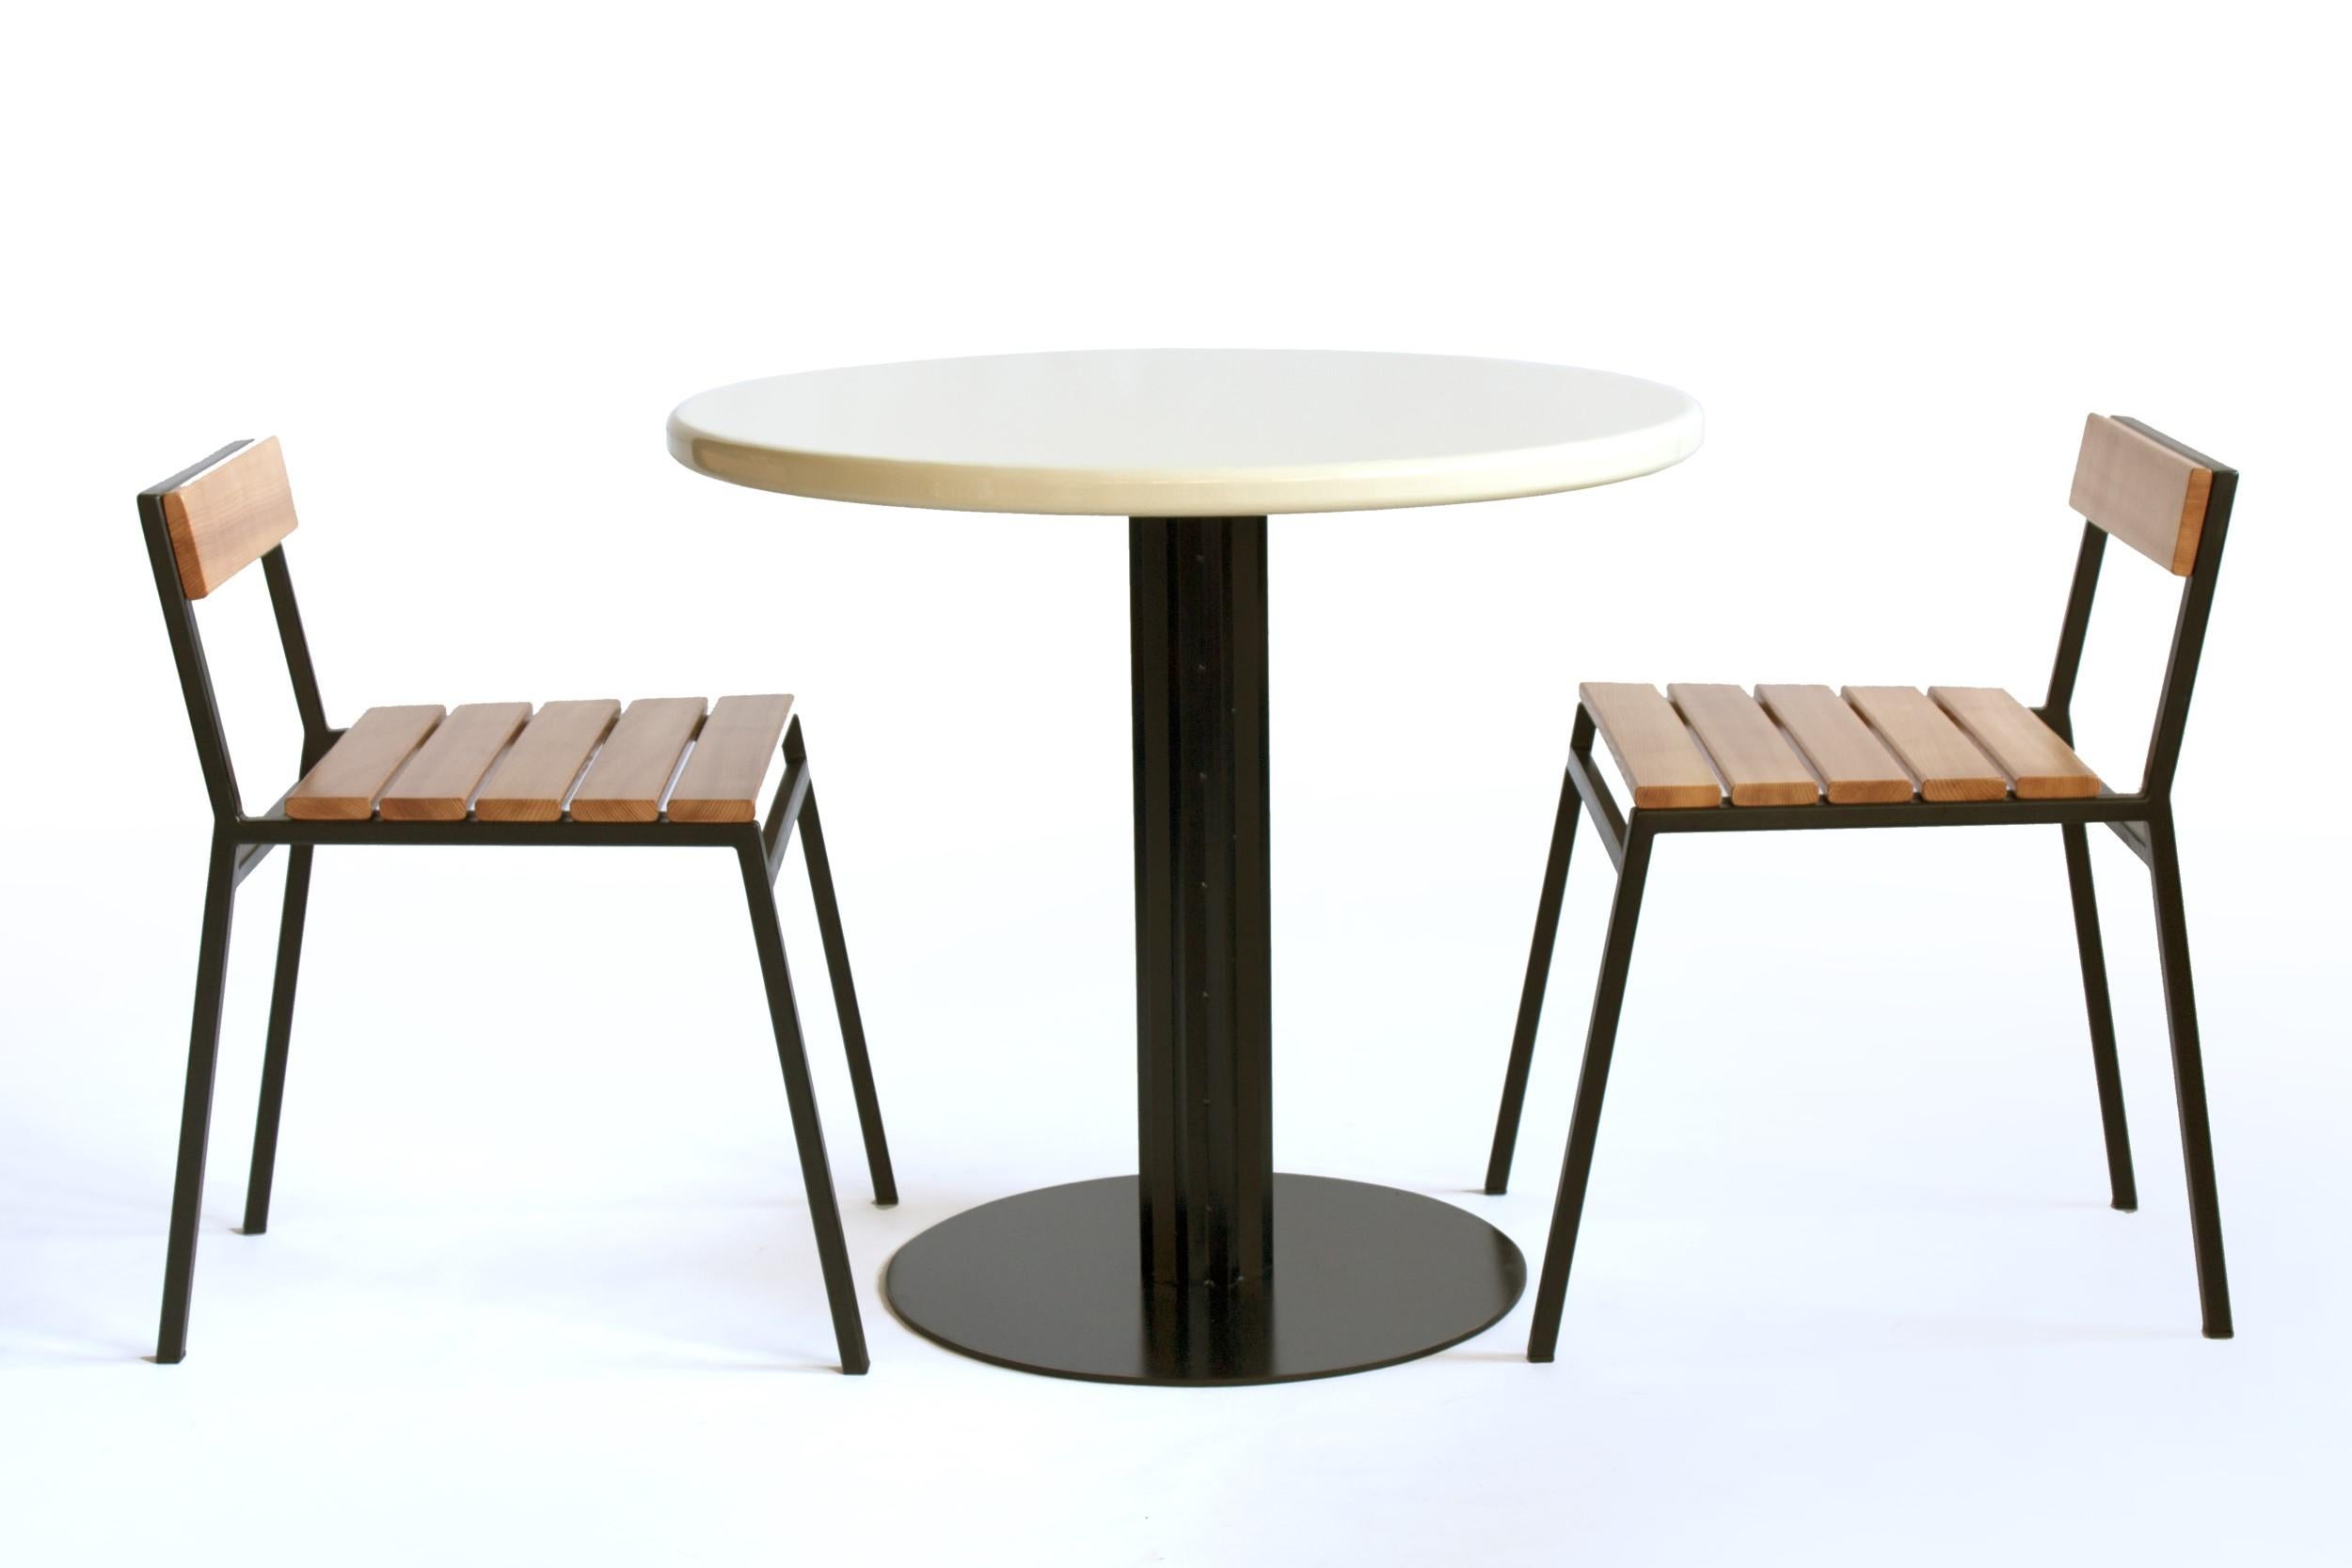 American Slaat Dining Chair in Cedar and Steel, Indoor/Outdoor Design by Kln Studio For Sale